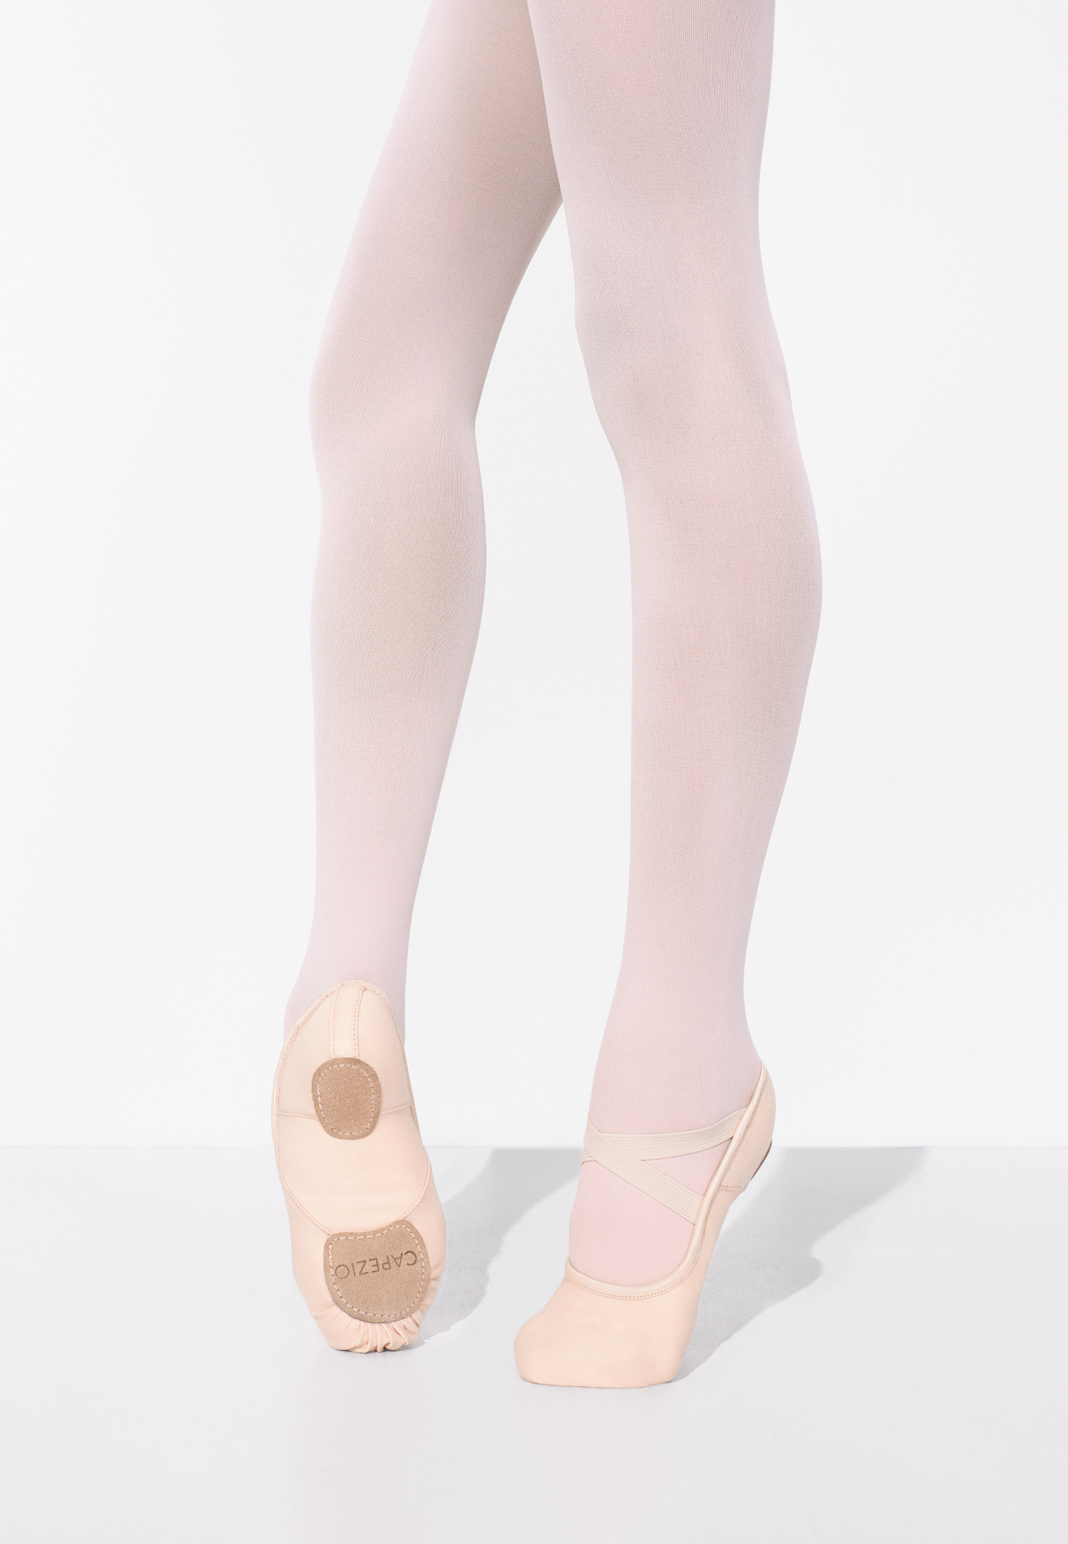 Capezio Hanami Child Ballet Shoe